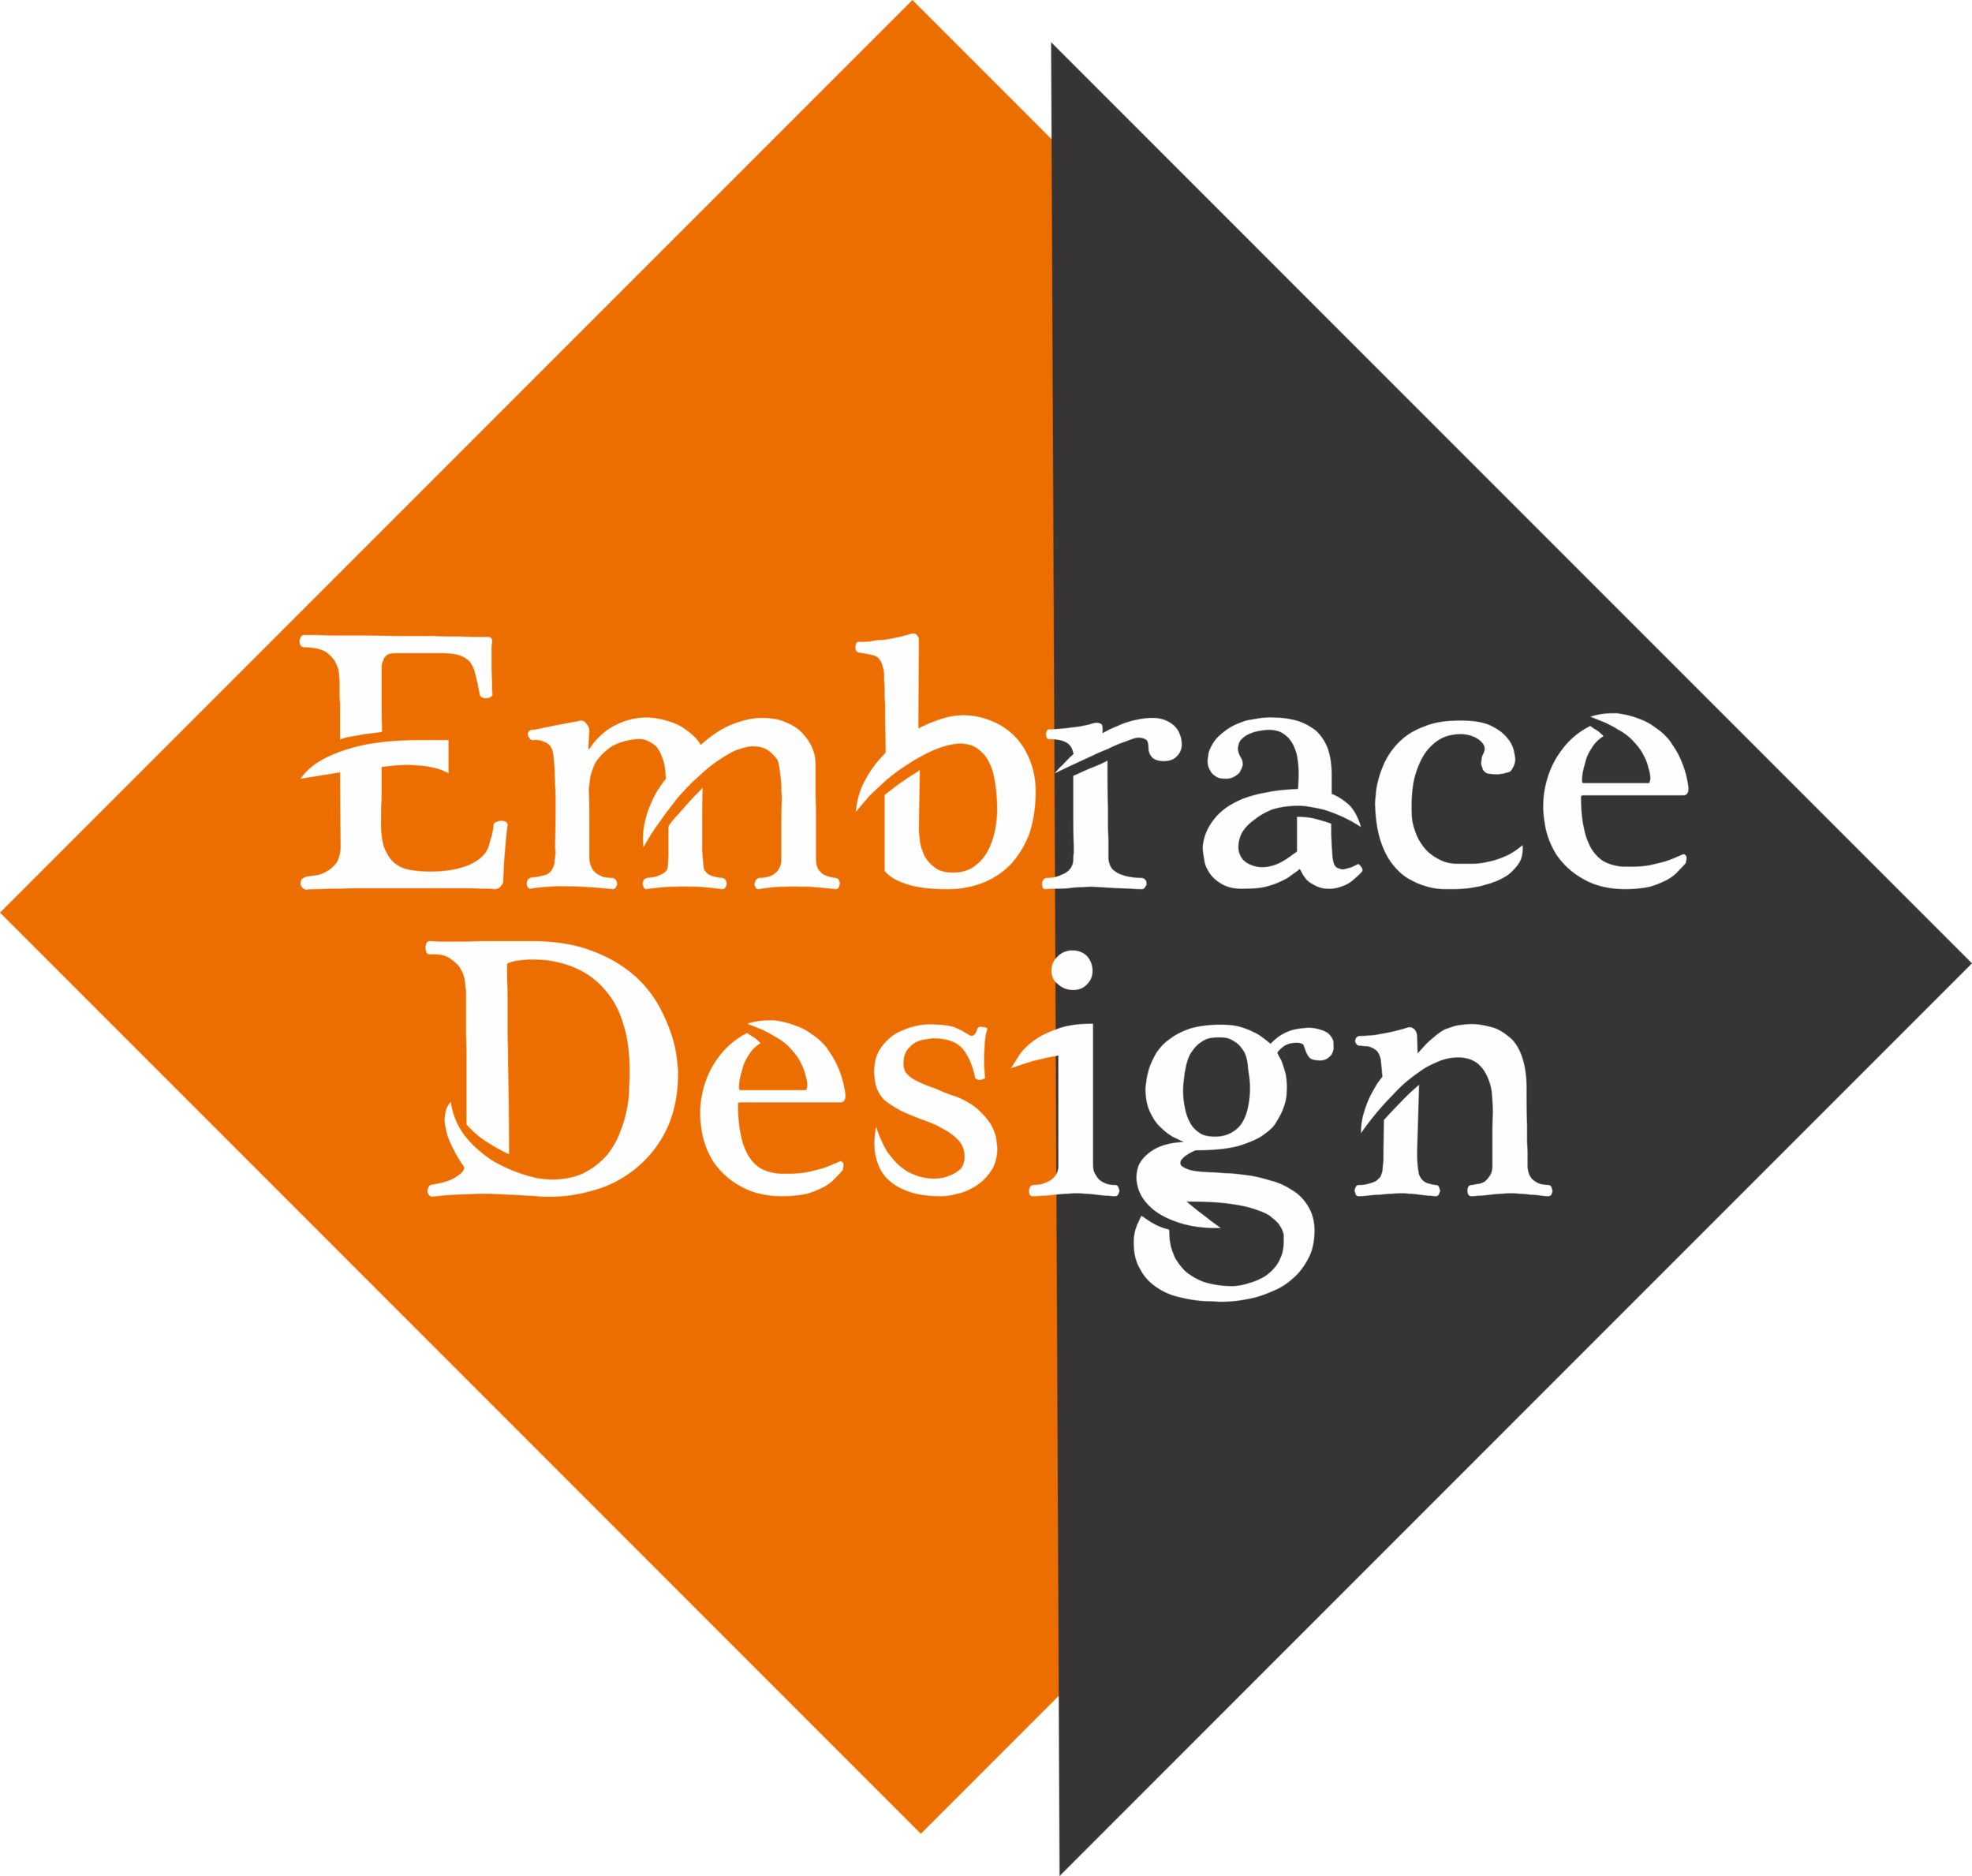 Embrace Design